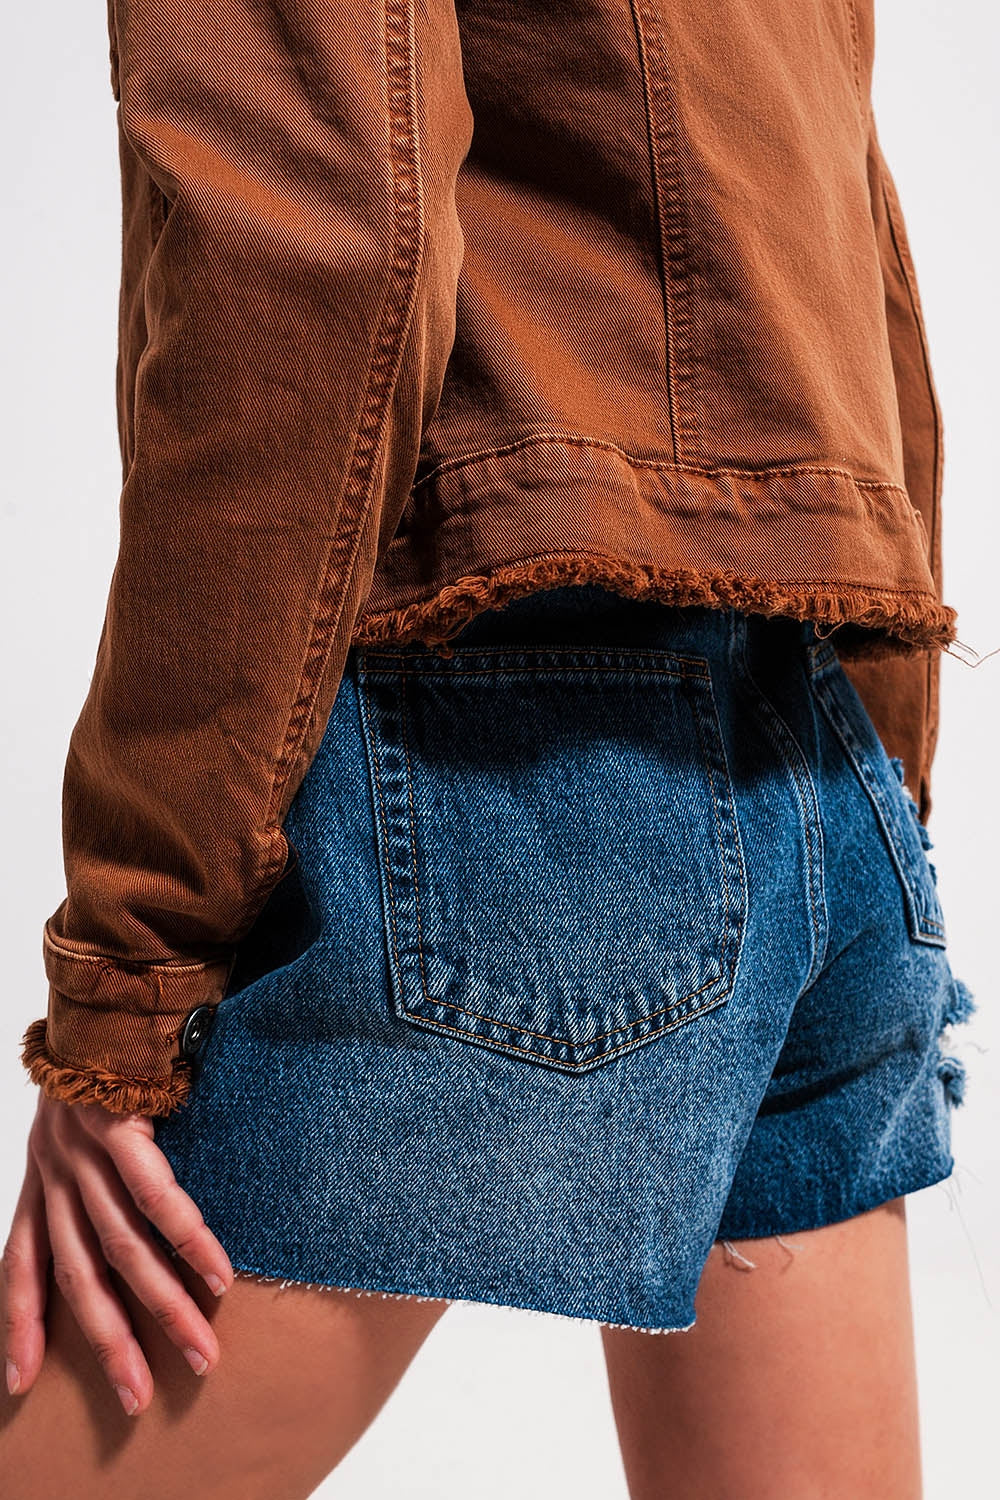 Giacca di jeans marrone con bordi grezzi